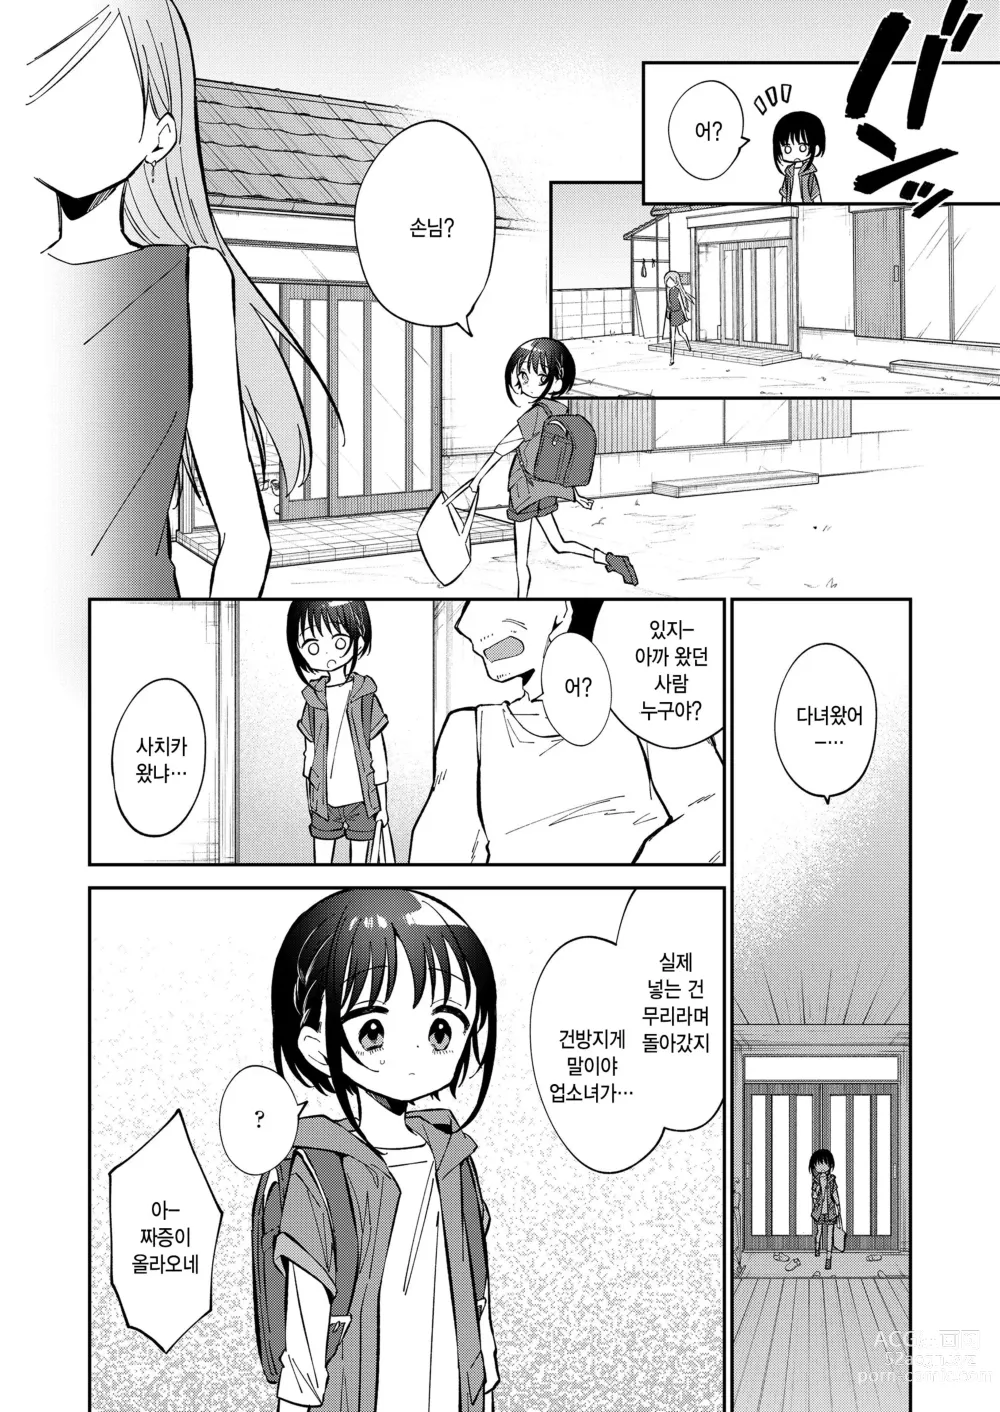 Page 18 of manga Watashi ga iki wo shiteru basho